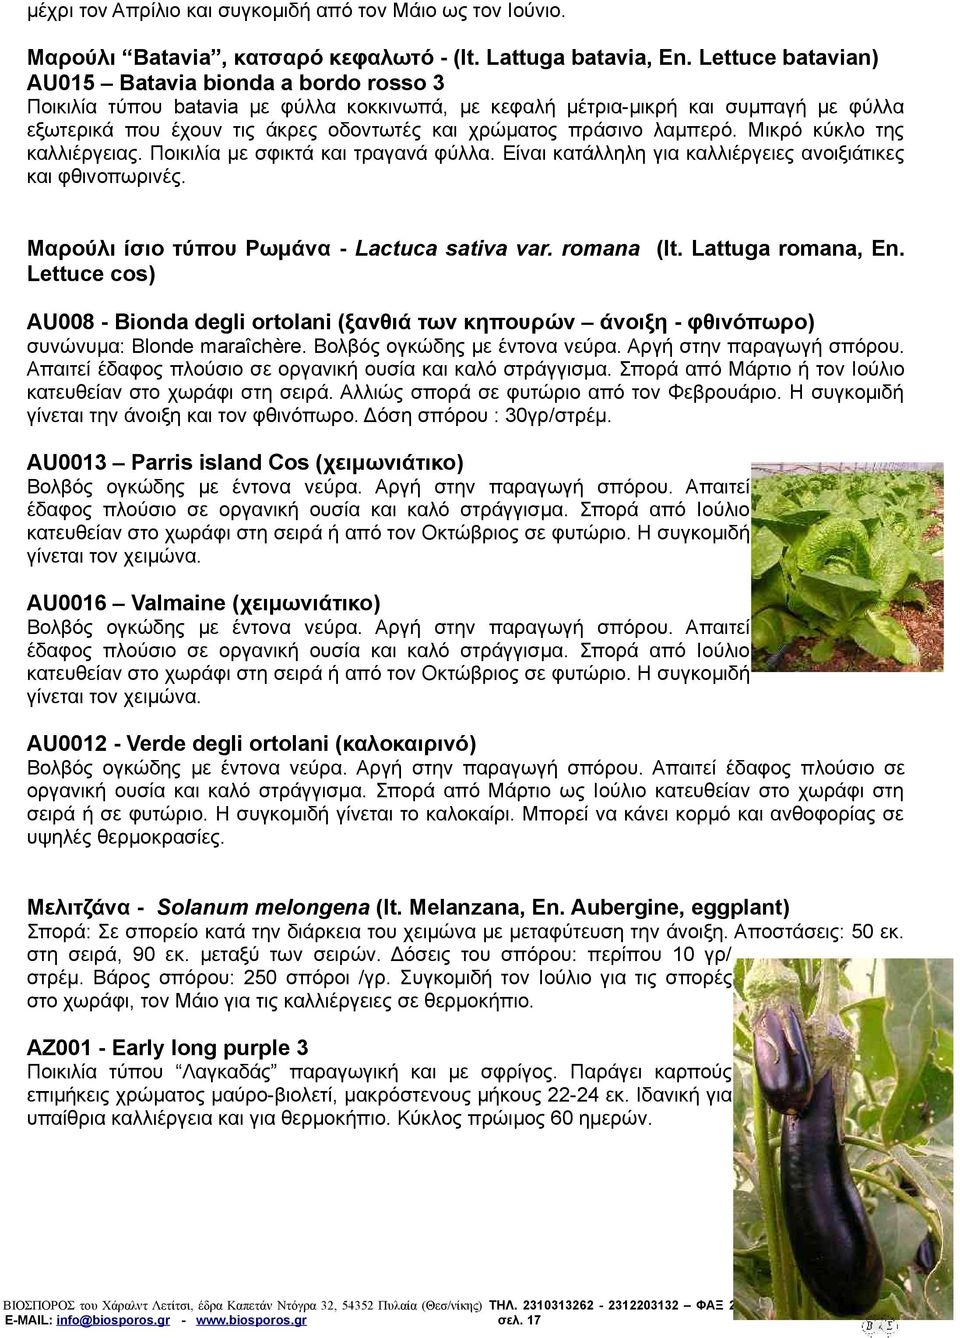 πράσινο λαμπερό. Μικρό κύκλο της καλλιέργειας. Ποικιλία με σφικτά και τραγανά φύλλα. Είναι κατάλληλη για καλλιέργειες ανοιξιάτικες και φθινοπωρινές. Μαρούλι ίσιο τύπου Ρωμάνα - Lactuca sativa var.